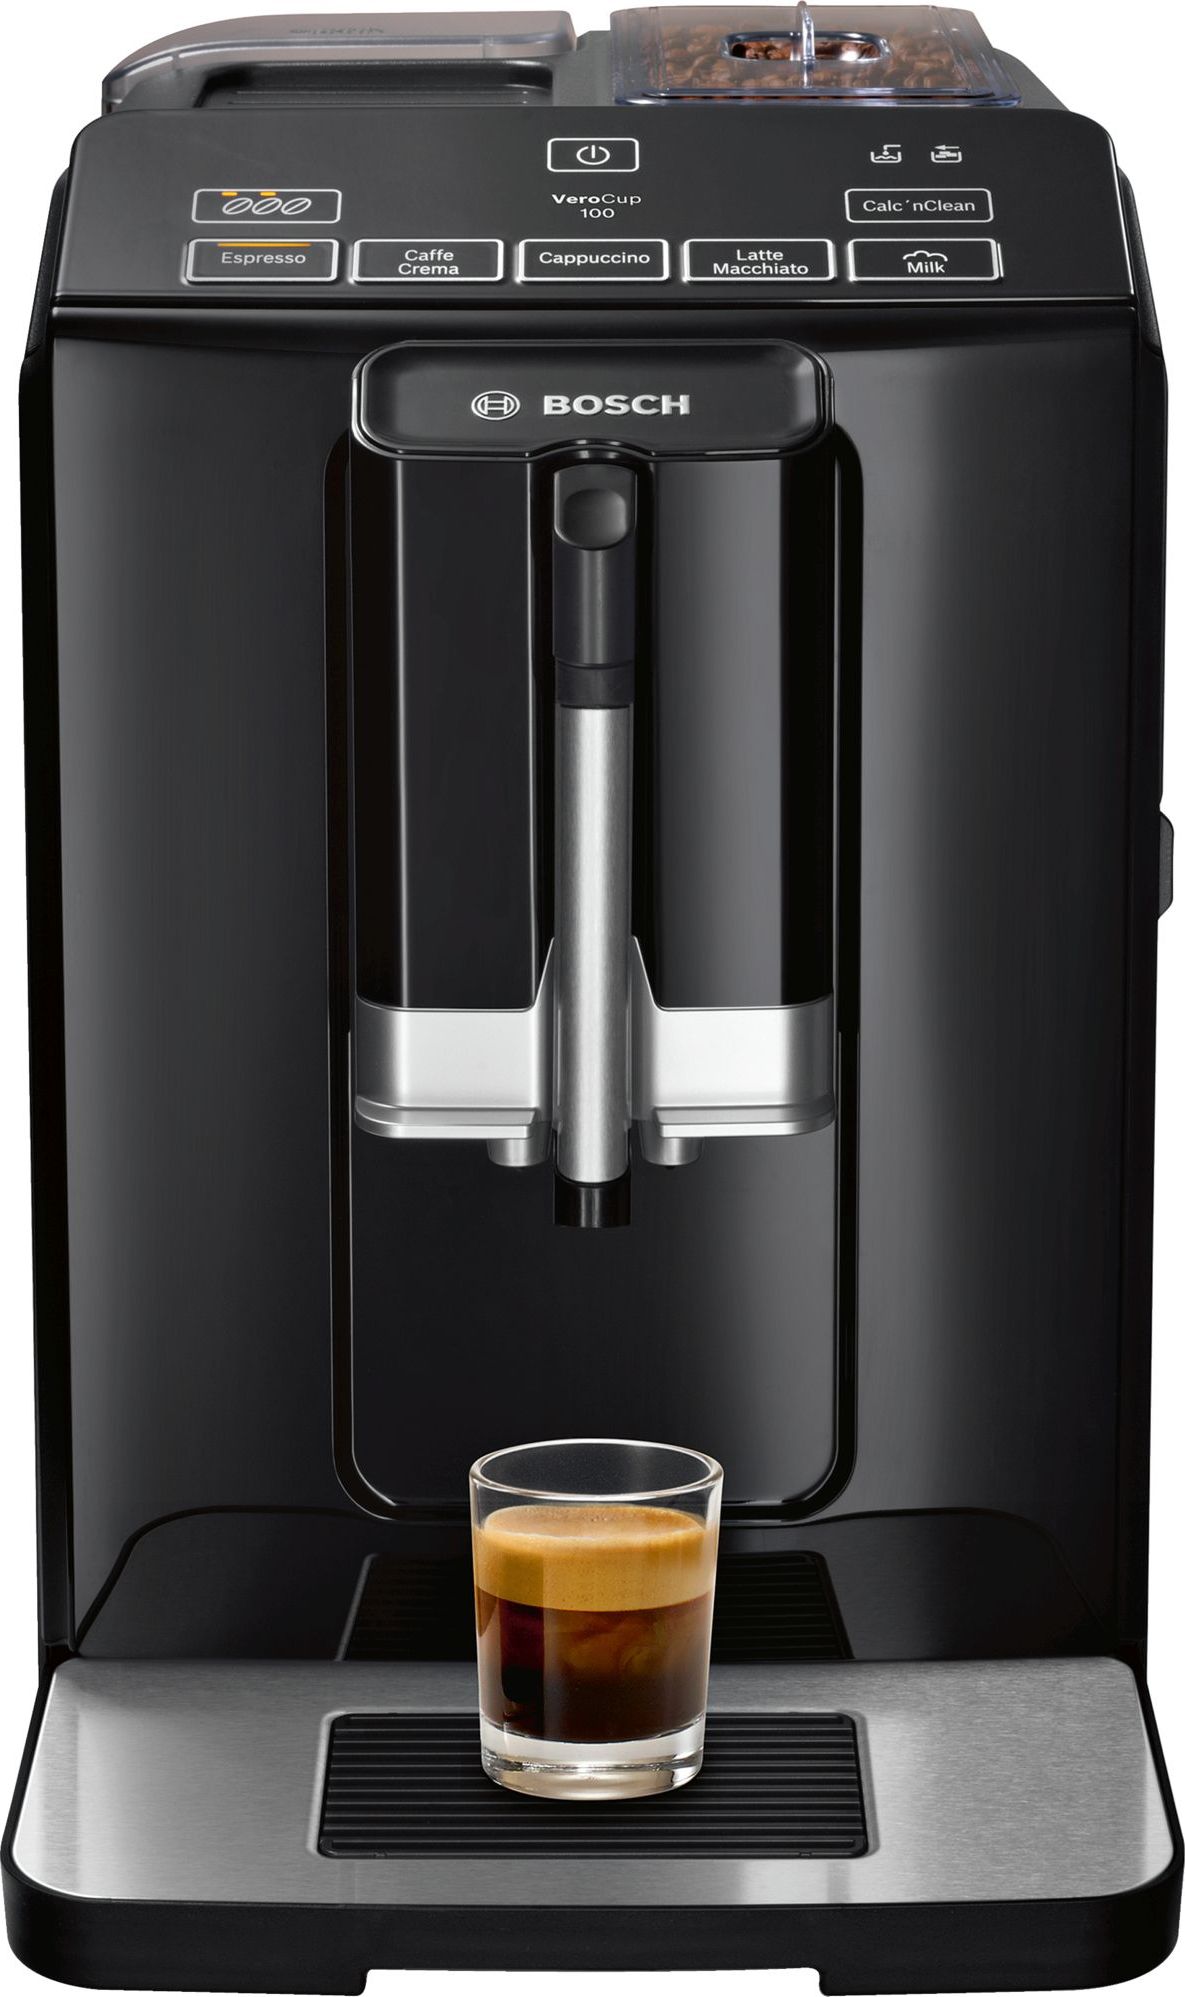 Espressoare - Espressor automat Bosch TIS30129RW, 1300W, 15 Bar, 1.4 l, Rasnita ceramica, dispozitivul spumare lapte MilkMagic Pro, Negru